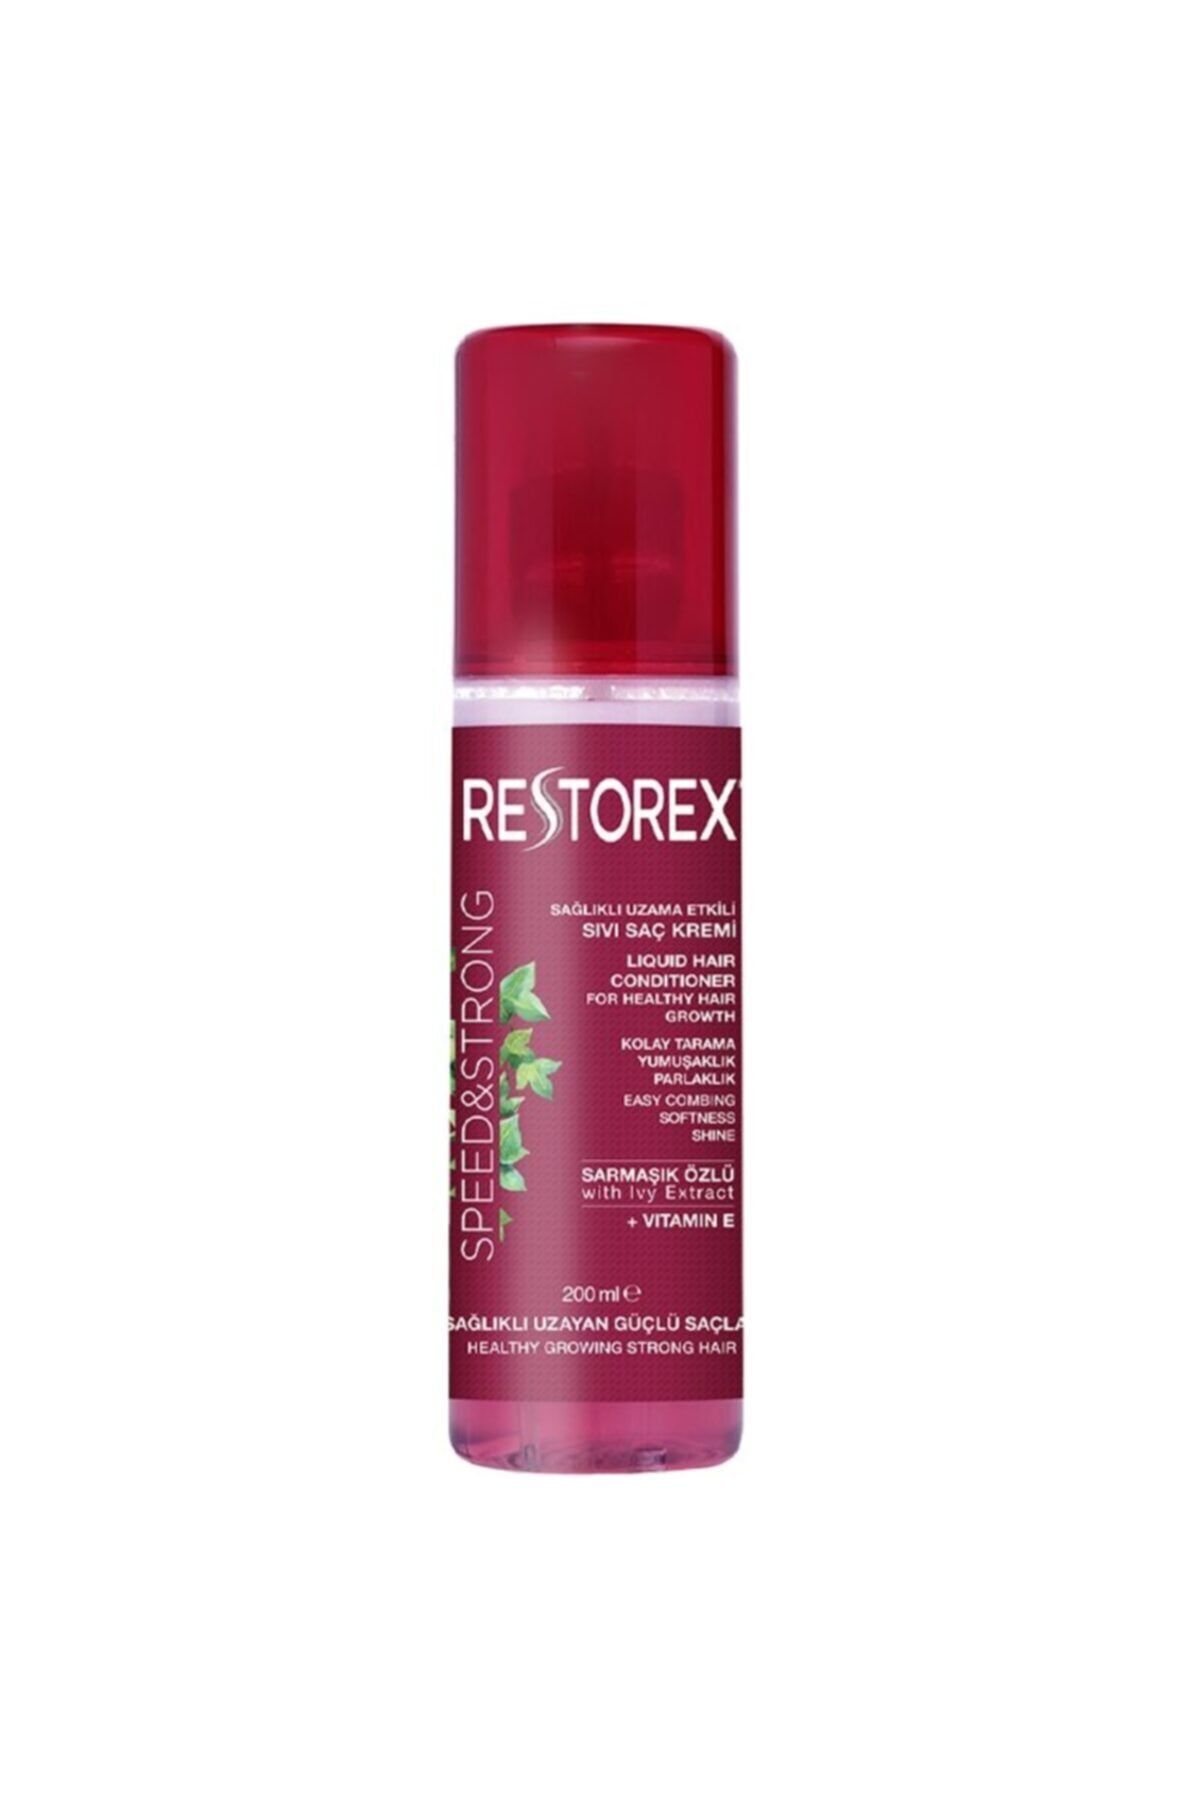 Restorex Sağlıklı Uzama Etkili Işıltılı Bakım Sıvı Saç Kremi 200 ml